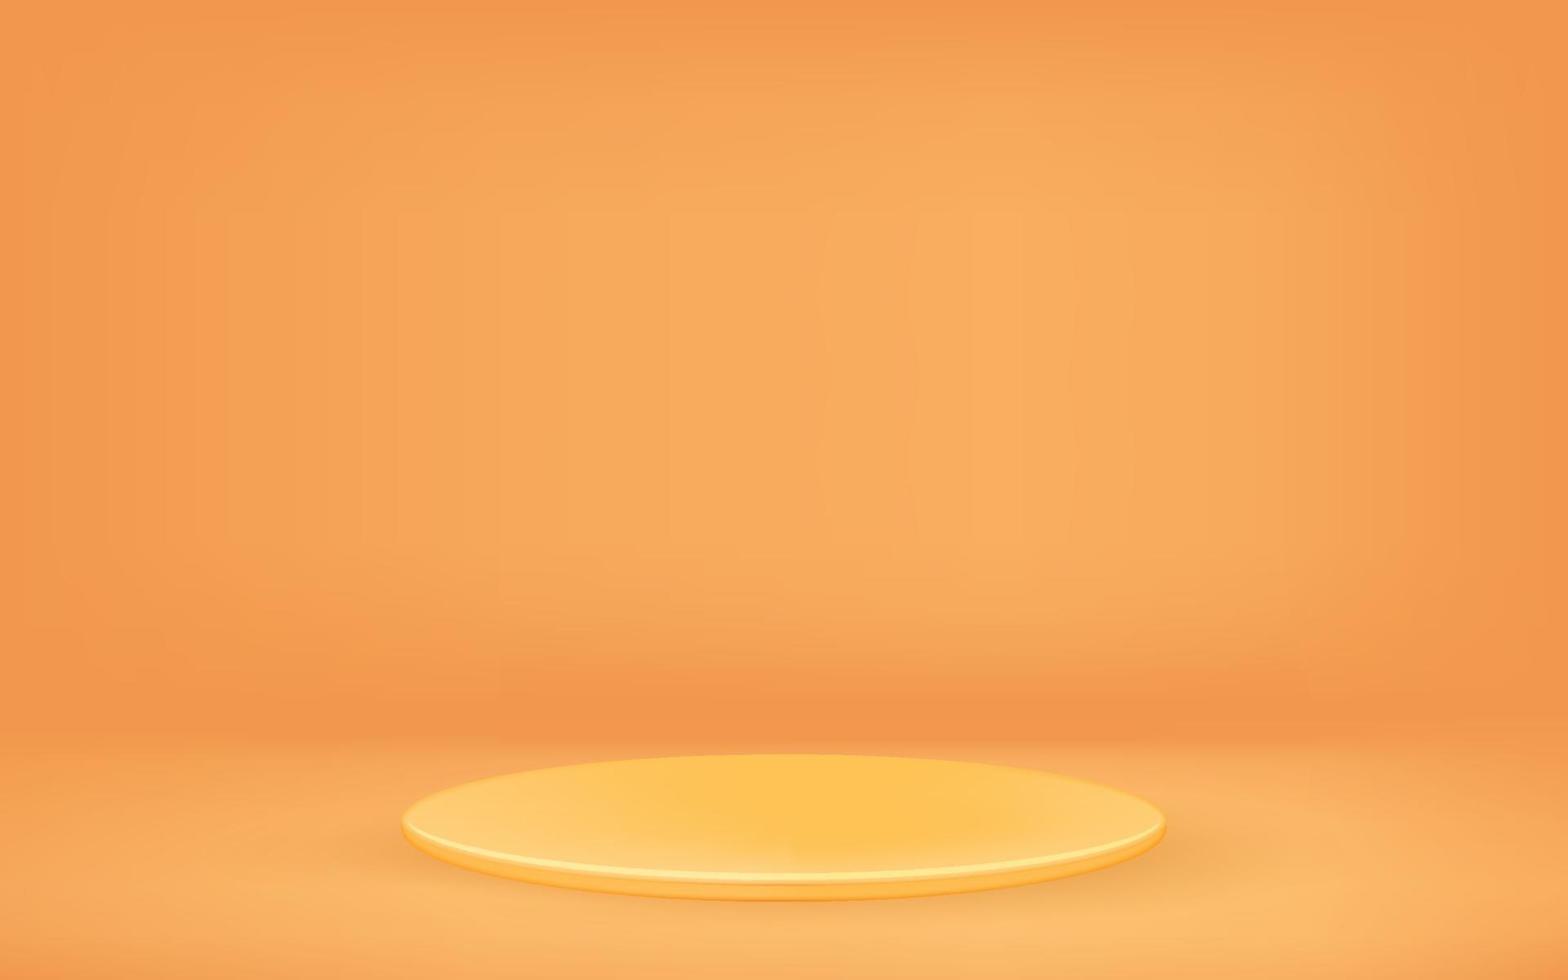 fundo laranja com pedestal. ilustração vetorial vetor